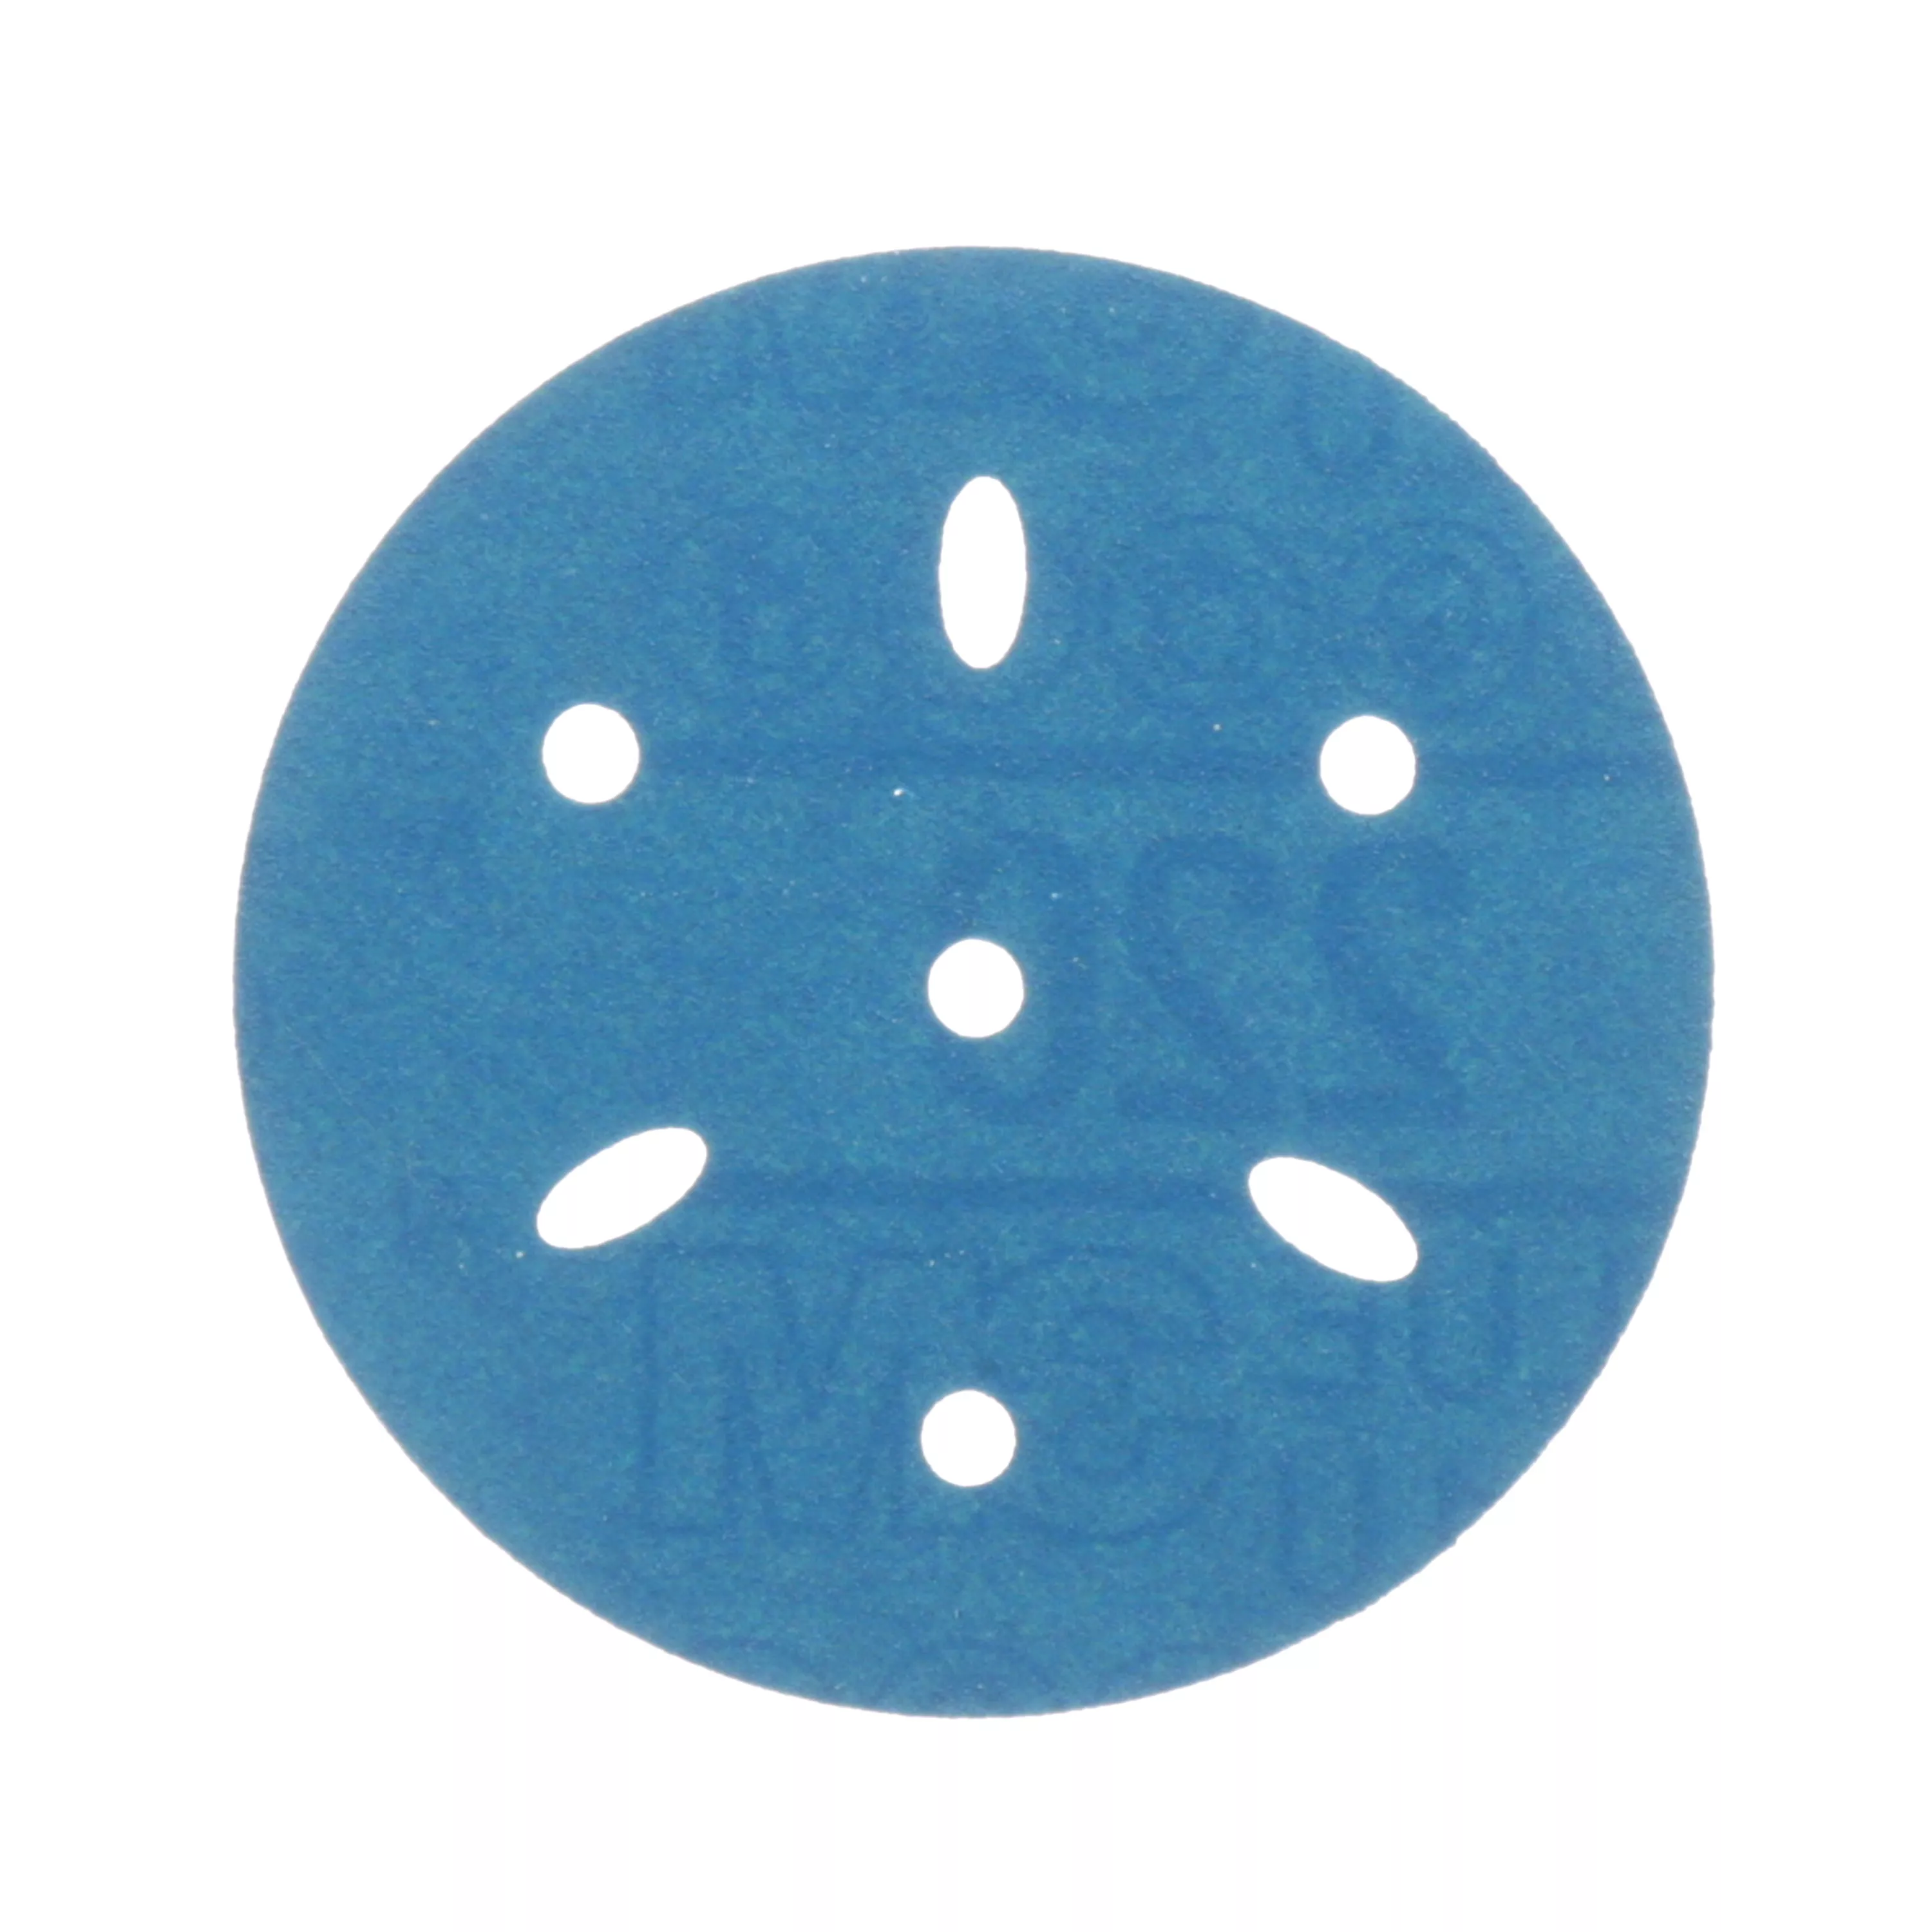 3M™ Hookit™ Blue Abrasive Disc Multi-hole, 36147, 3 in, 220 grade, 50
discs per carton, 4 cartons per case